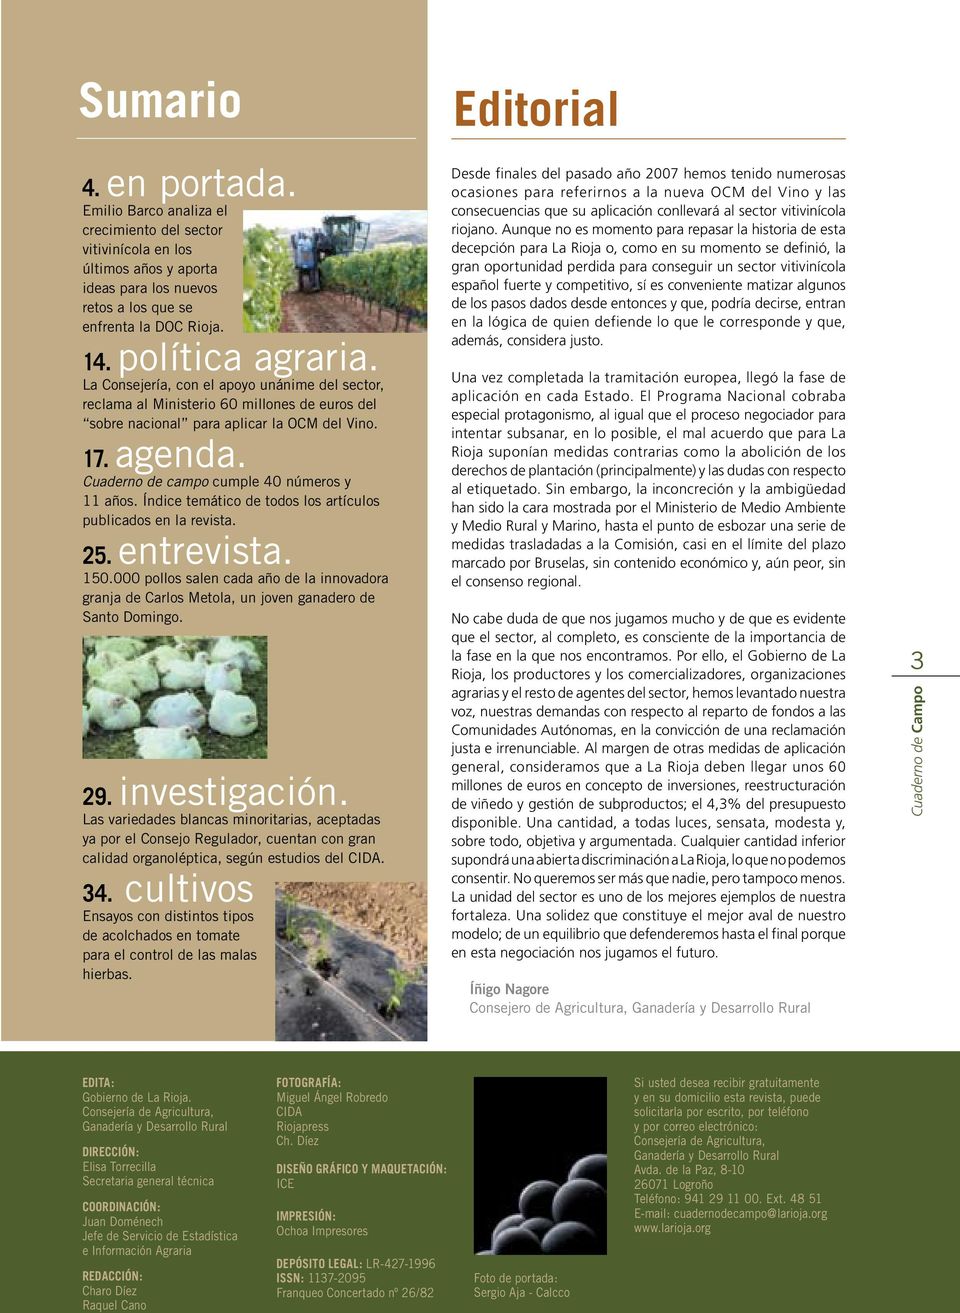 Índice temático de todos los artículos publicados en la revista. 25. entrevista. 150.000 pollos salen cada año de la innovadora granja de Carlos Metola, un joven ganadero de Santo Domingo. 29.